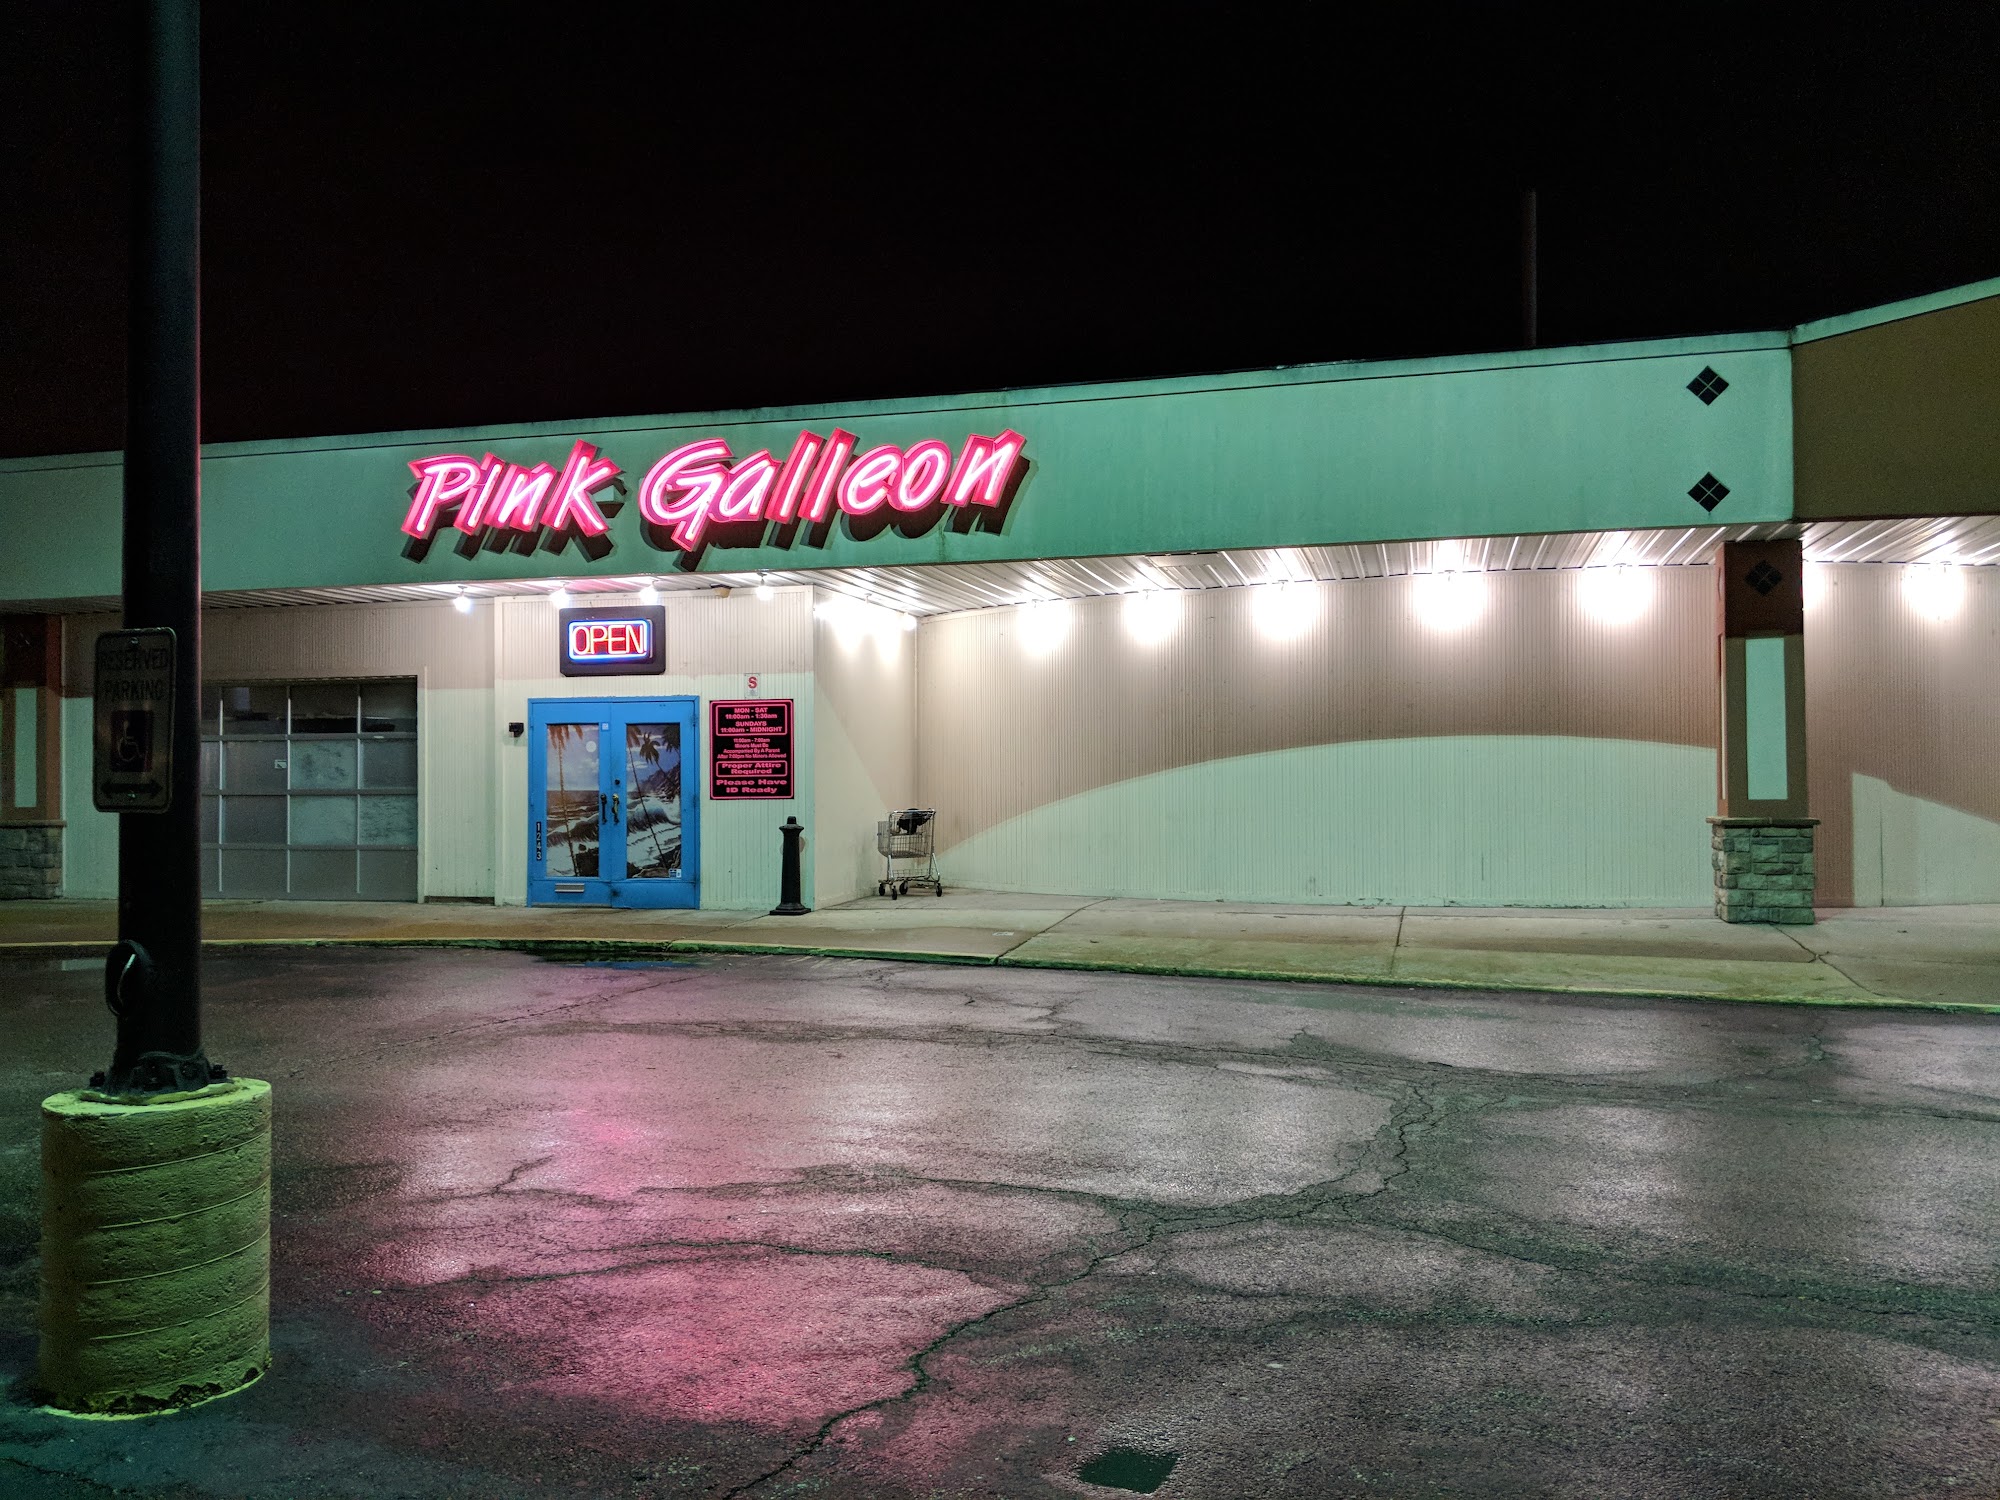 Pink Galleon Billiards & Games